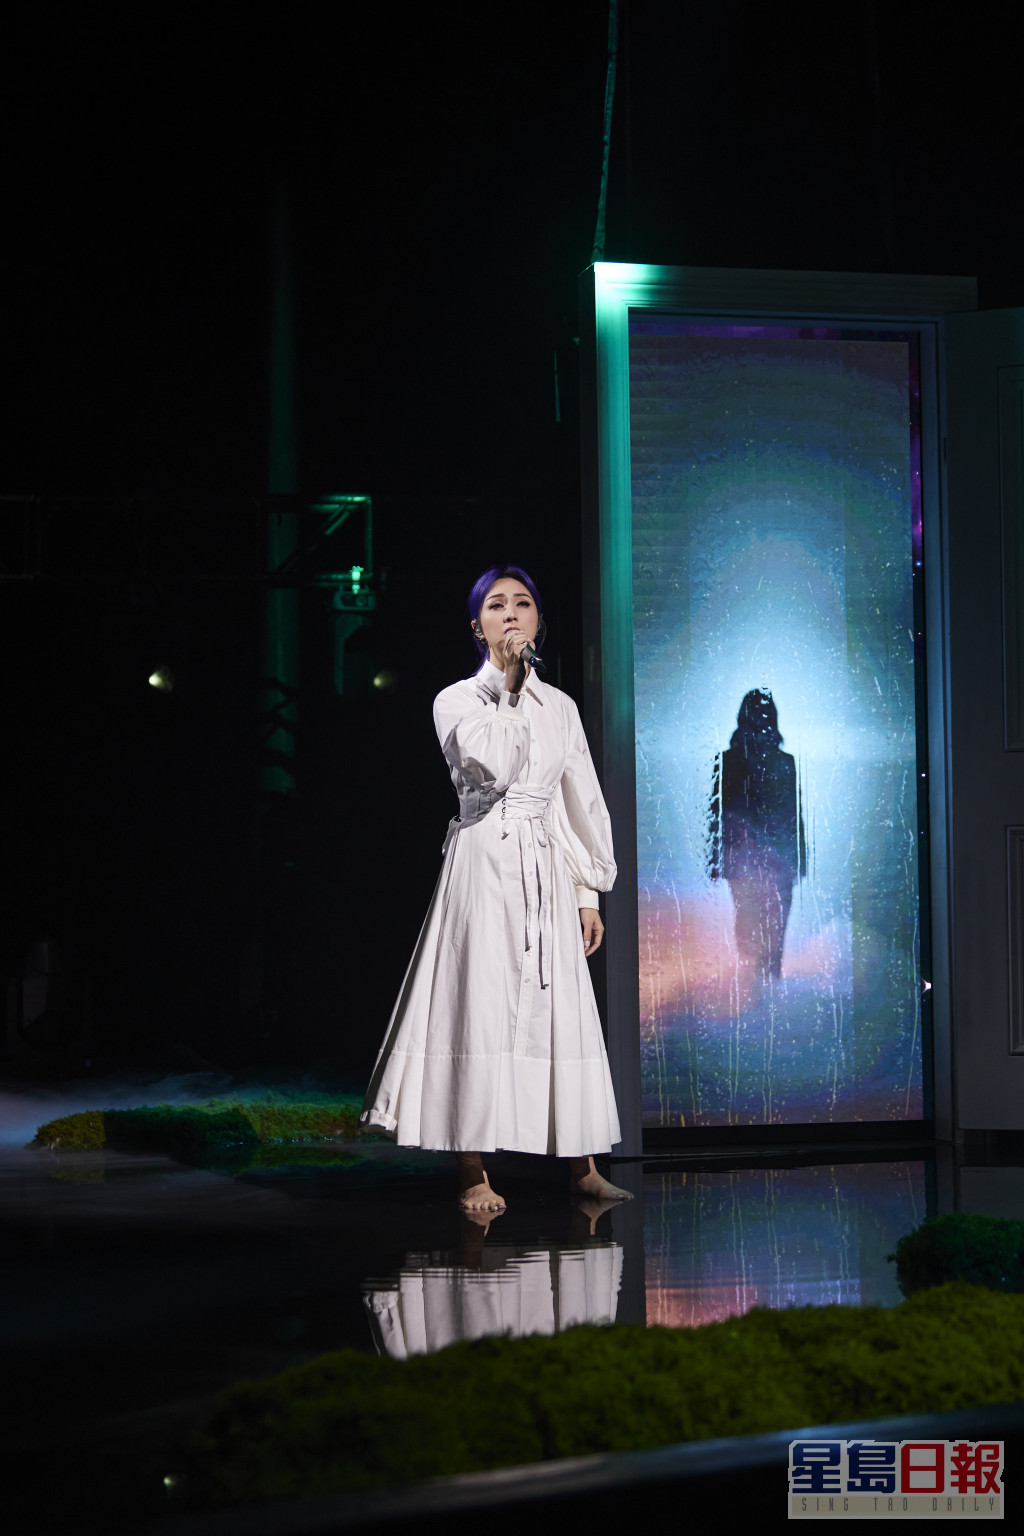 千嬅以赤脚演绎配合效果，舞台上还有两个杨千嬅出现。